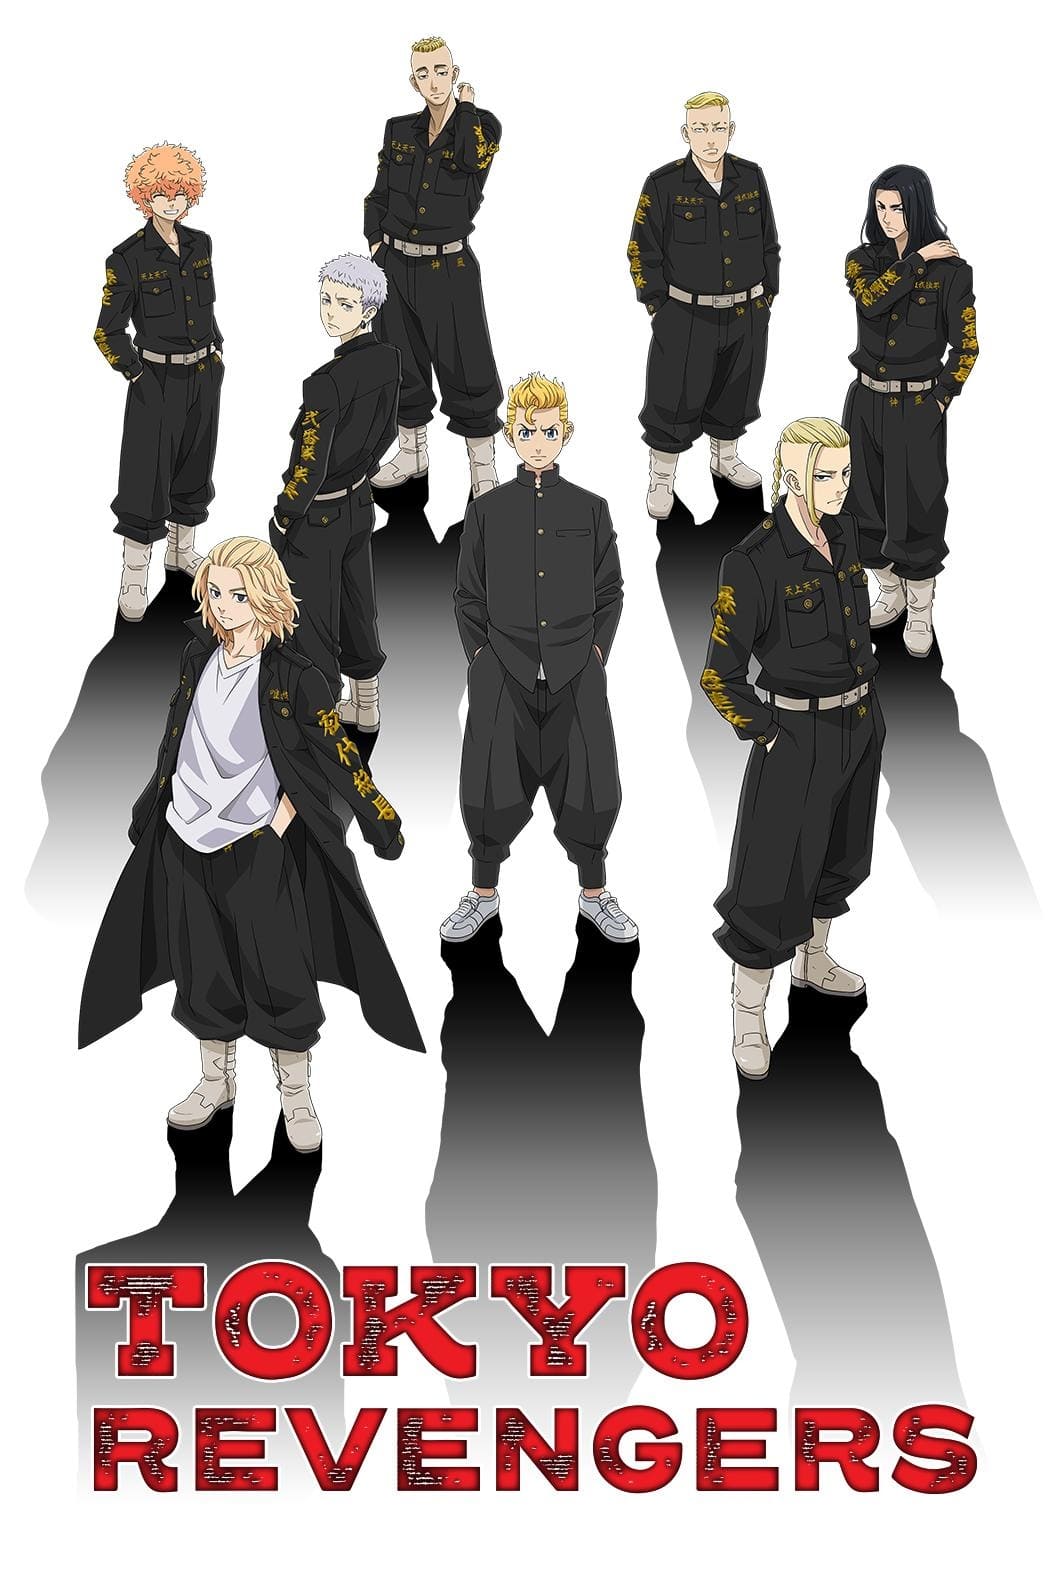 Mua Poster 8 tấm A4 Tokyo Revengers anime manga tranh treo album ảnh in hình  đẹp (MẪU GIAO NGẪU NHIÊN) tại STORM SHOP